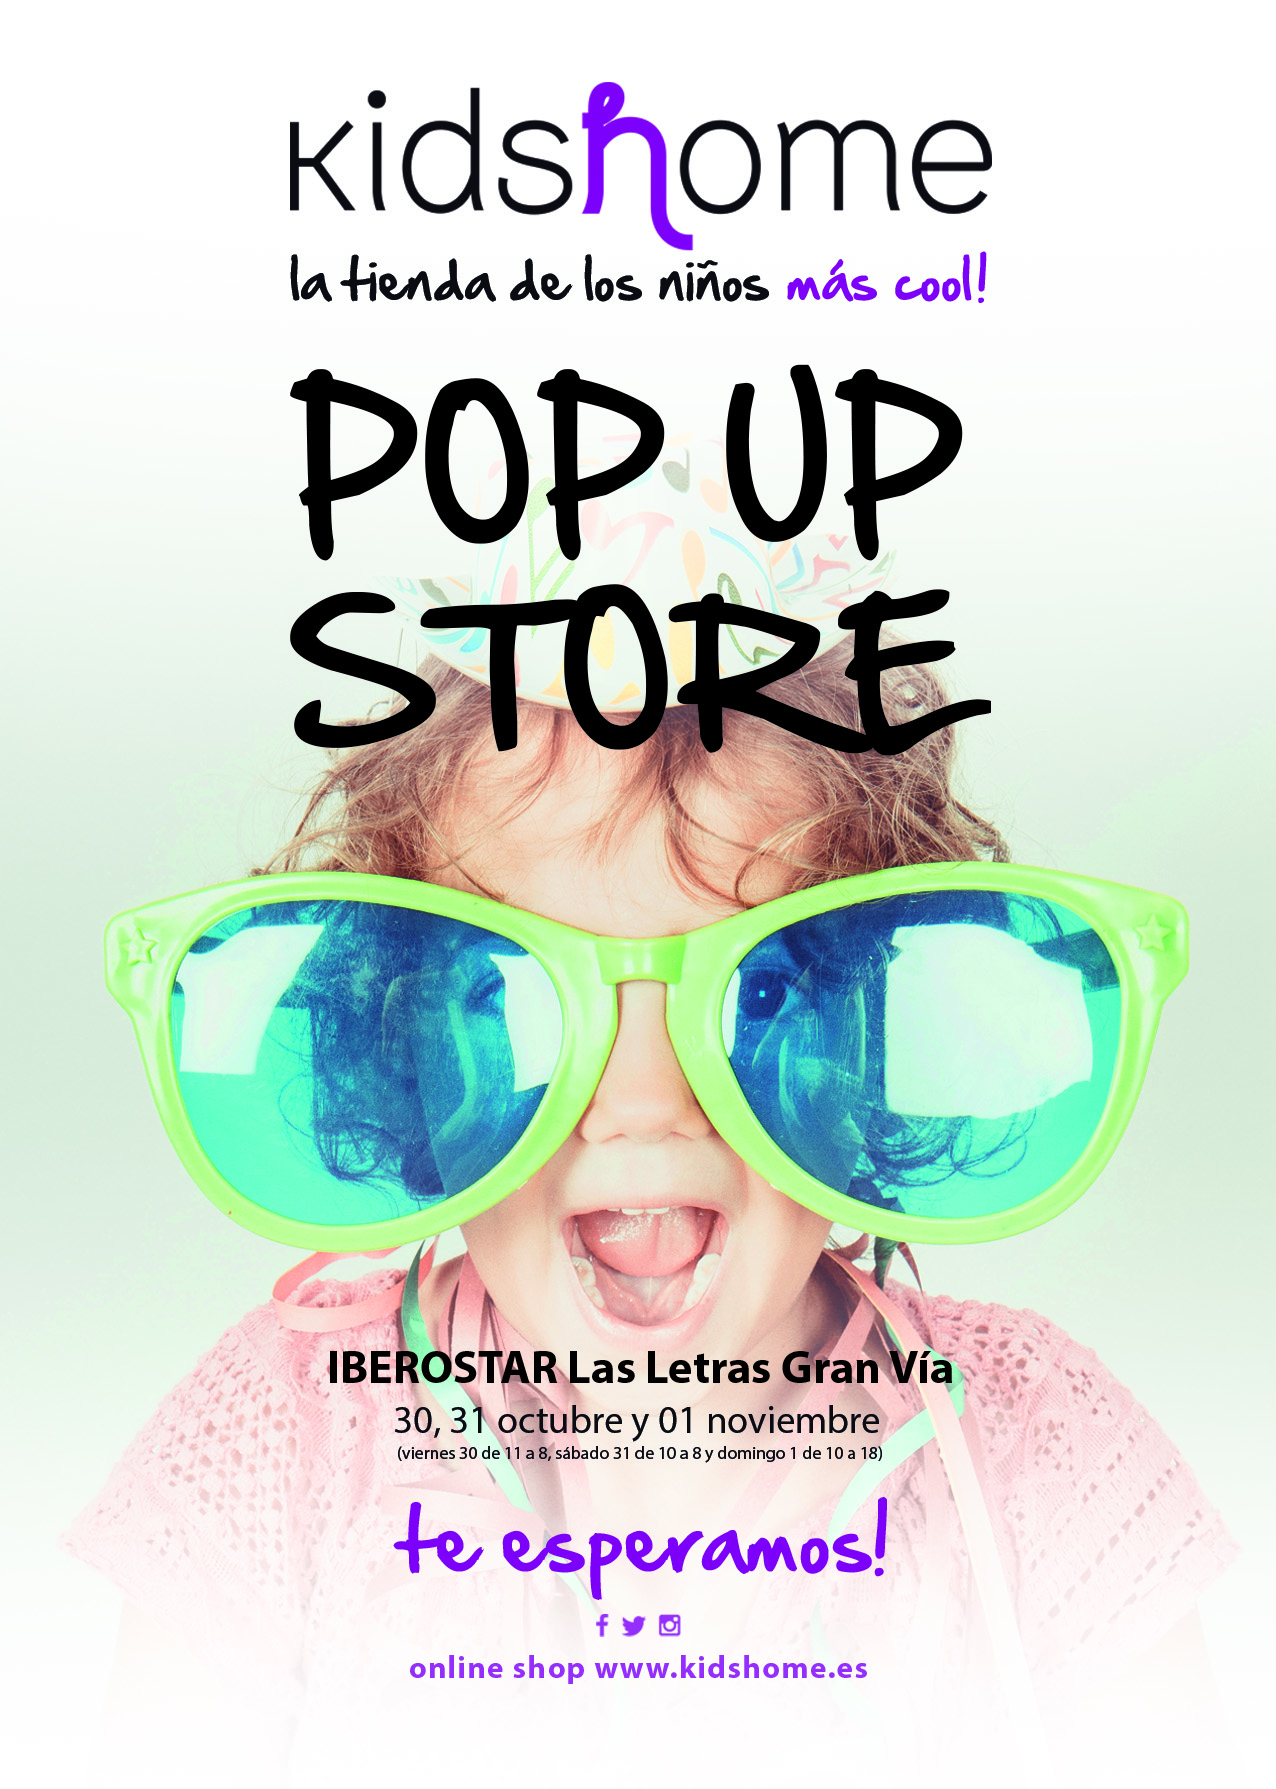 Kidshome llega a Madrid con su Pop Up Store ¡no te lo pierdas!